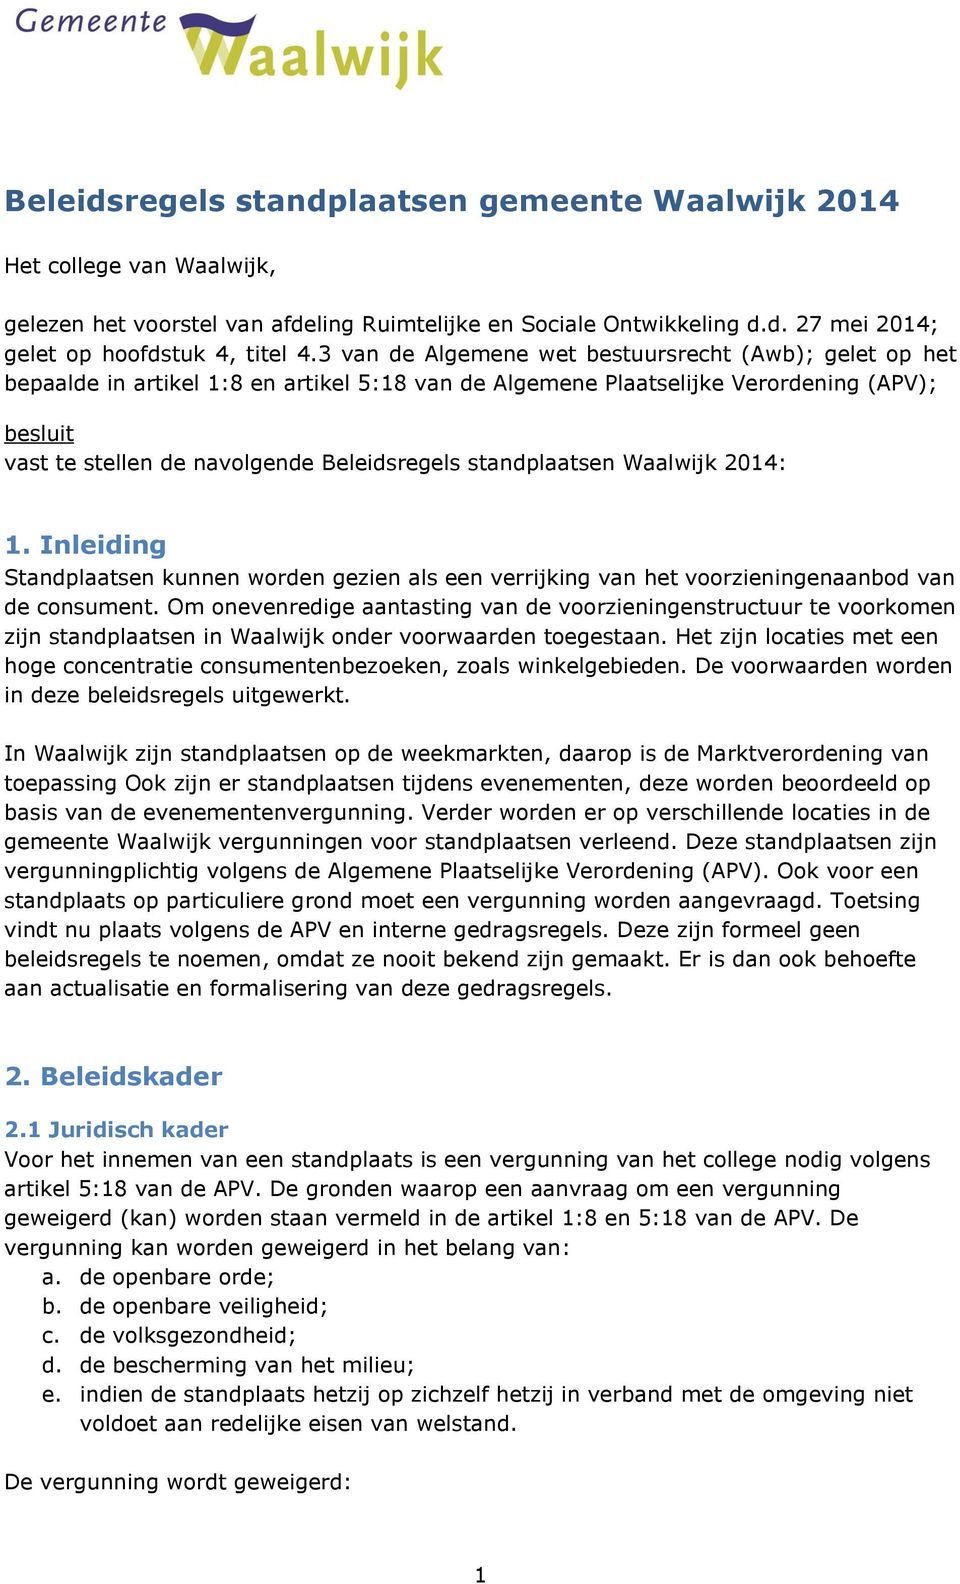 standplaatsen Waalwijk 2014: 1. Inleiding Standplaatsen kunnen worden gezien als een verrijking van het voorzieningenaanbod van de consument.